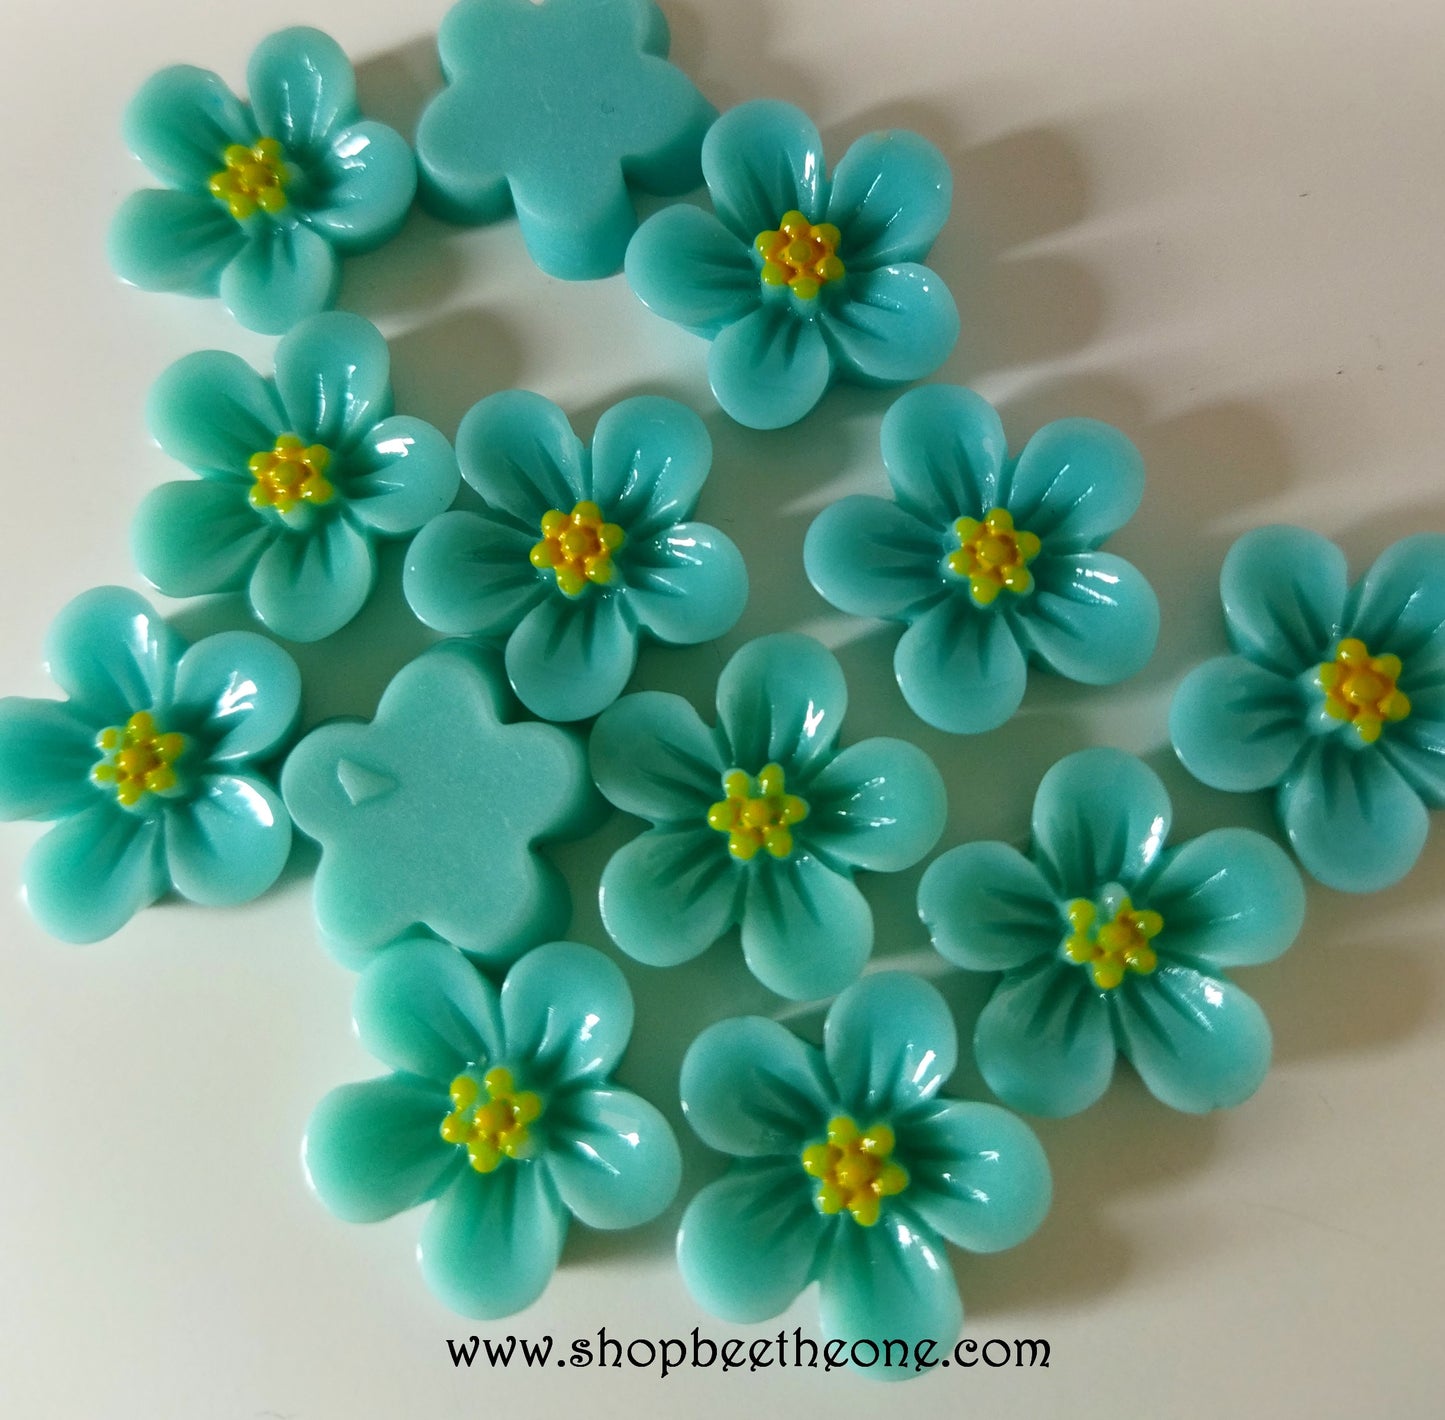 Cabochon plat "Petite Fleur" pour embellissement ou miniature - 18 mm - bleu/vert